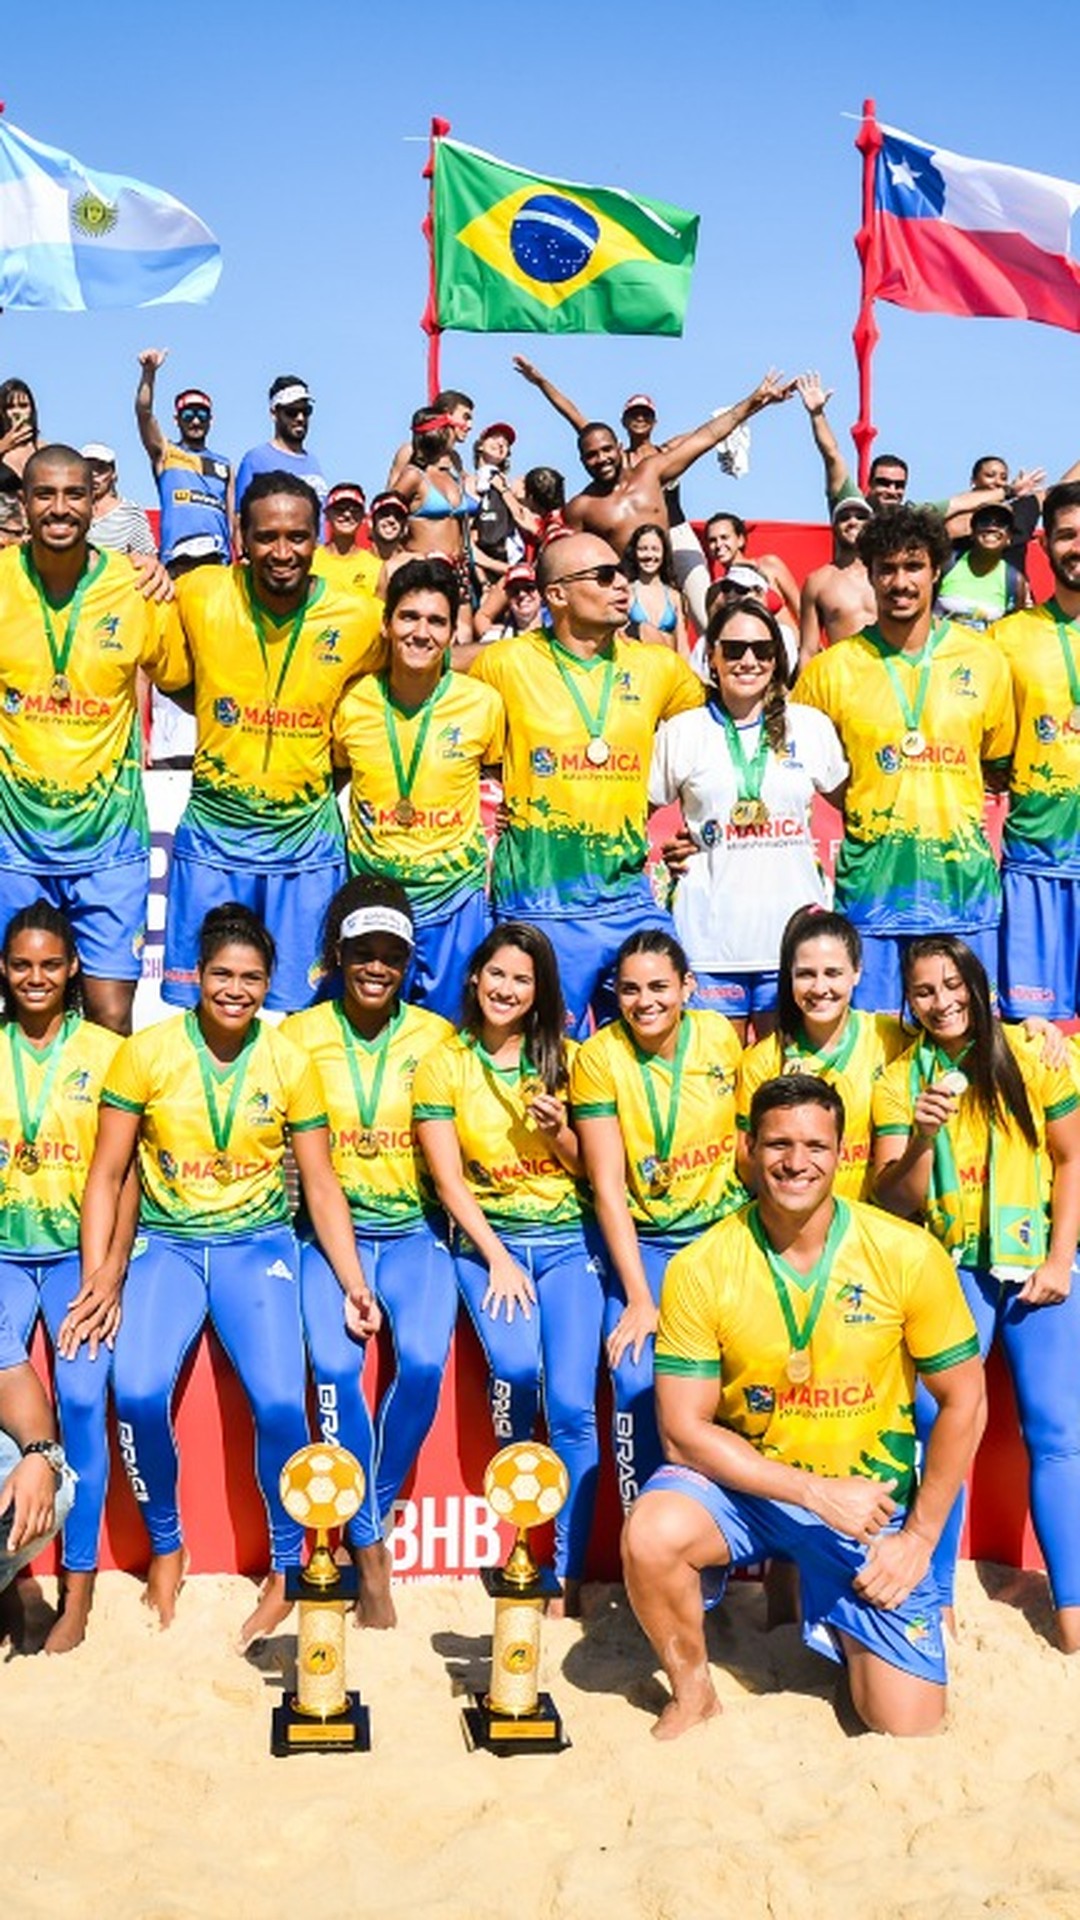 Globo Esporte PB, João Pessoa realiza torneio de futevôlei com mais de 350  atletas